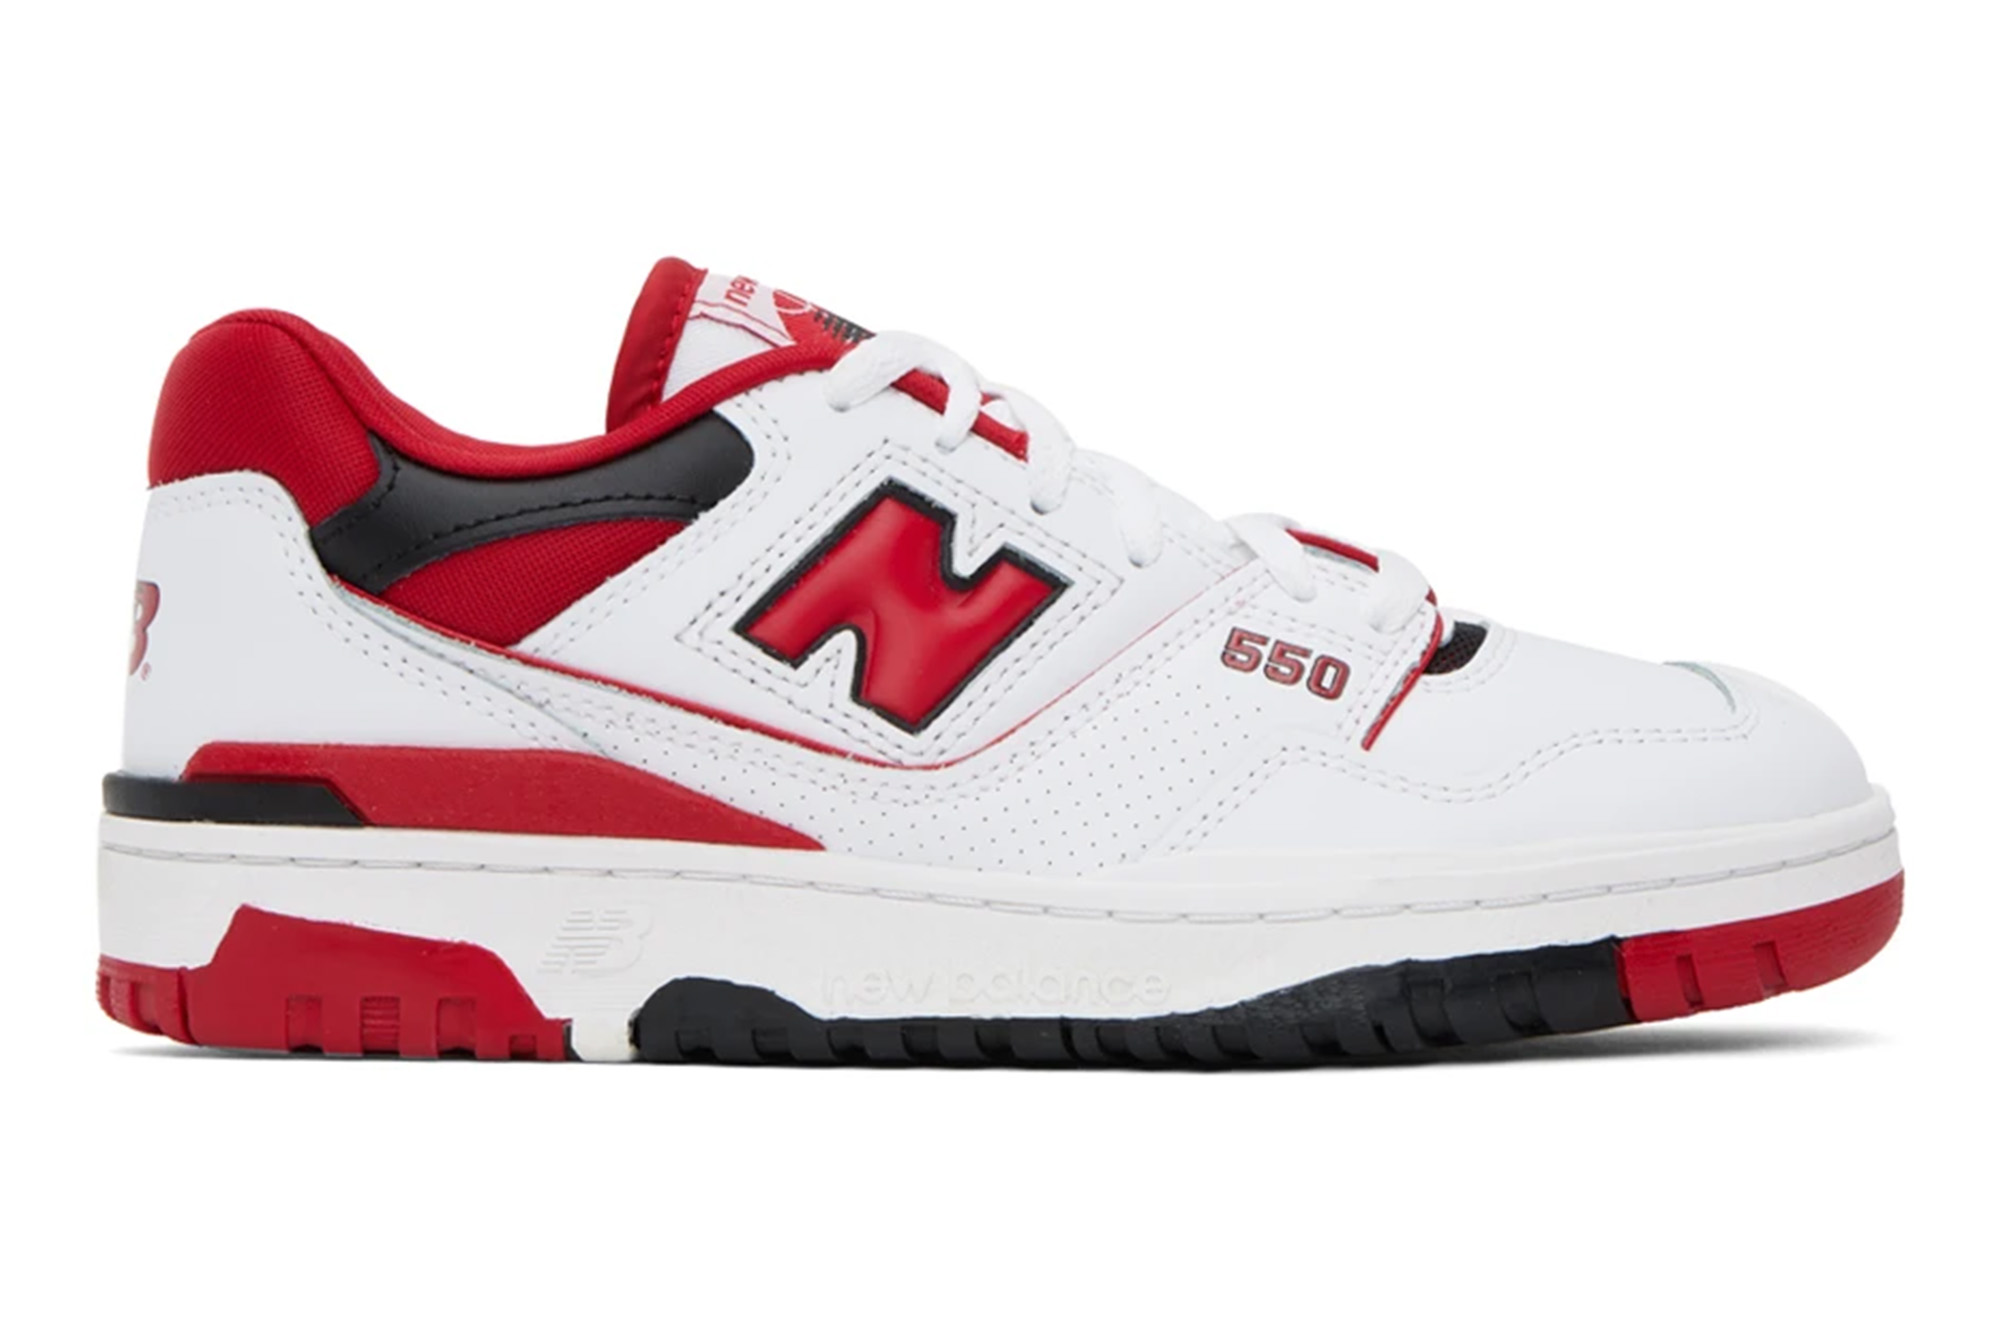 New Balance 550-Sneaker in Weiß und Rot